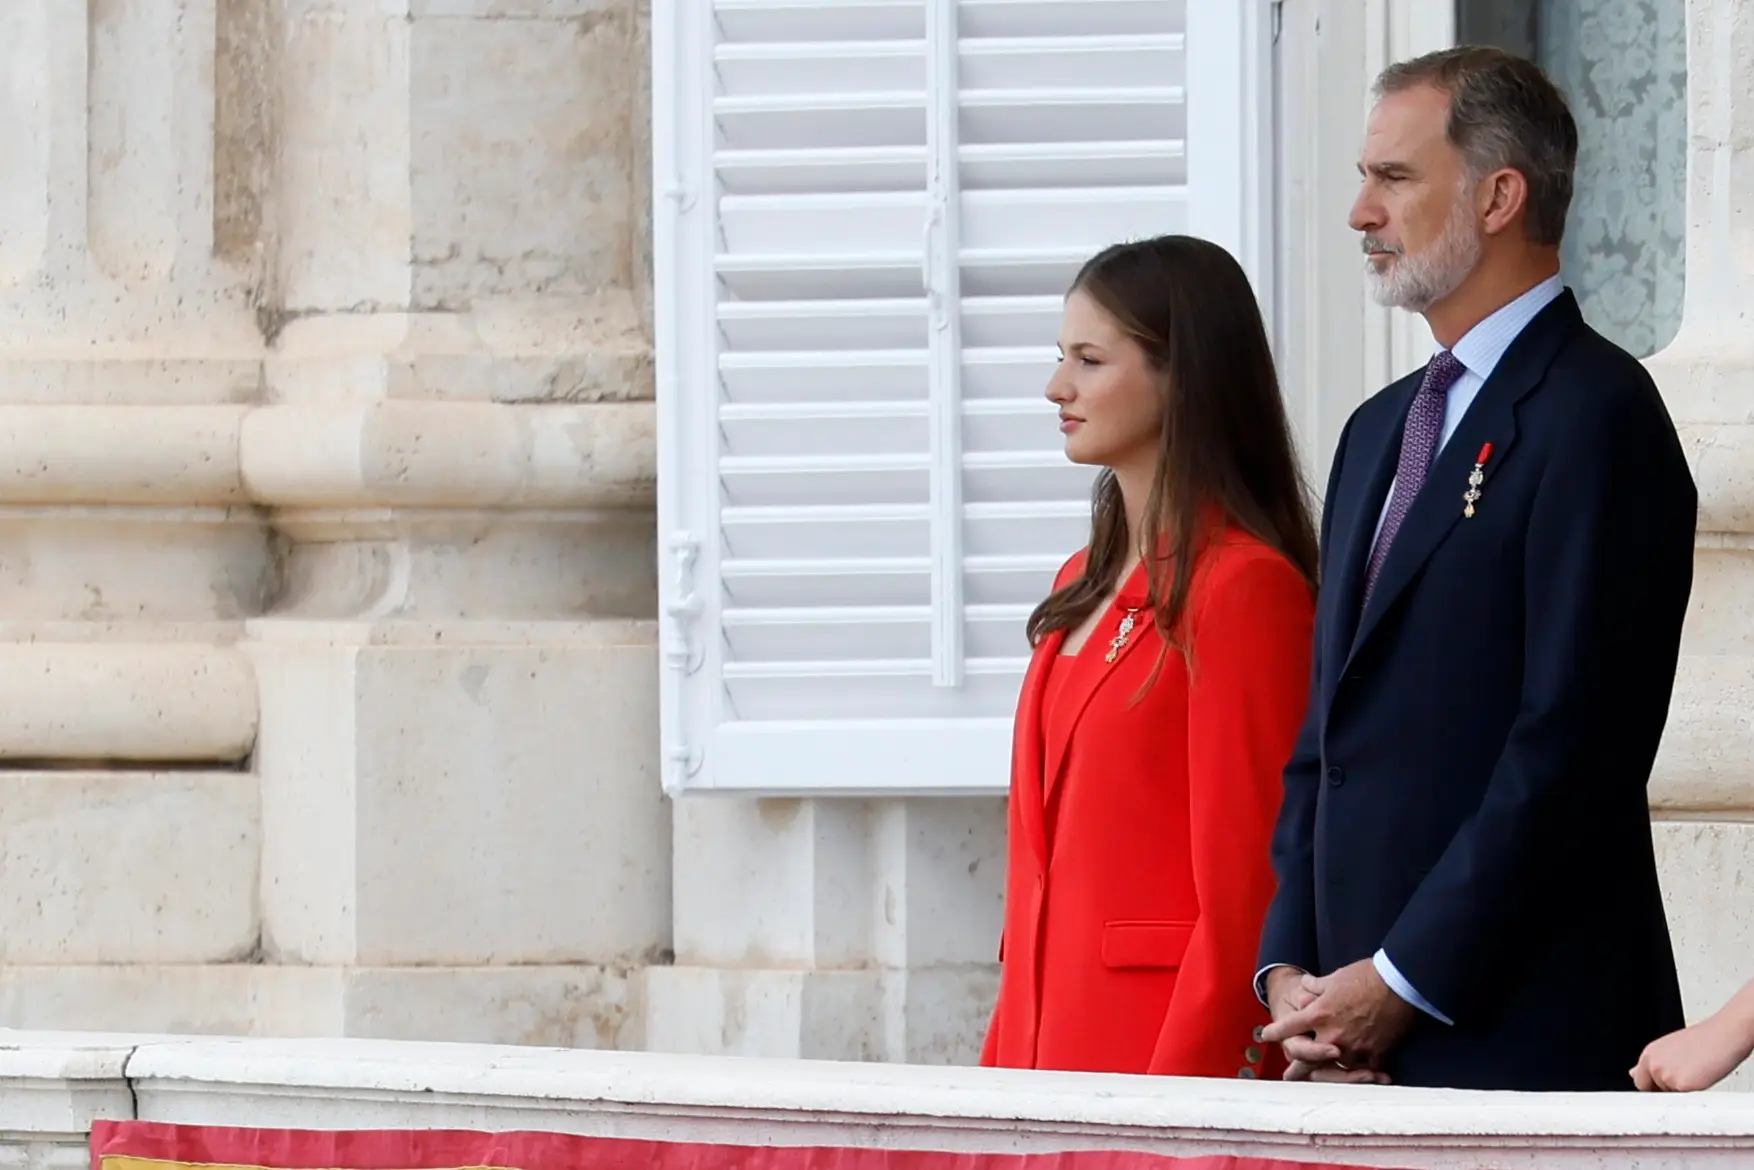 Futura rainha de Espanha chega sexta-feira a Portugal, destino ideal para a primeira visita de Leonor